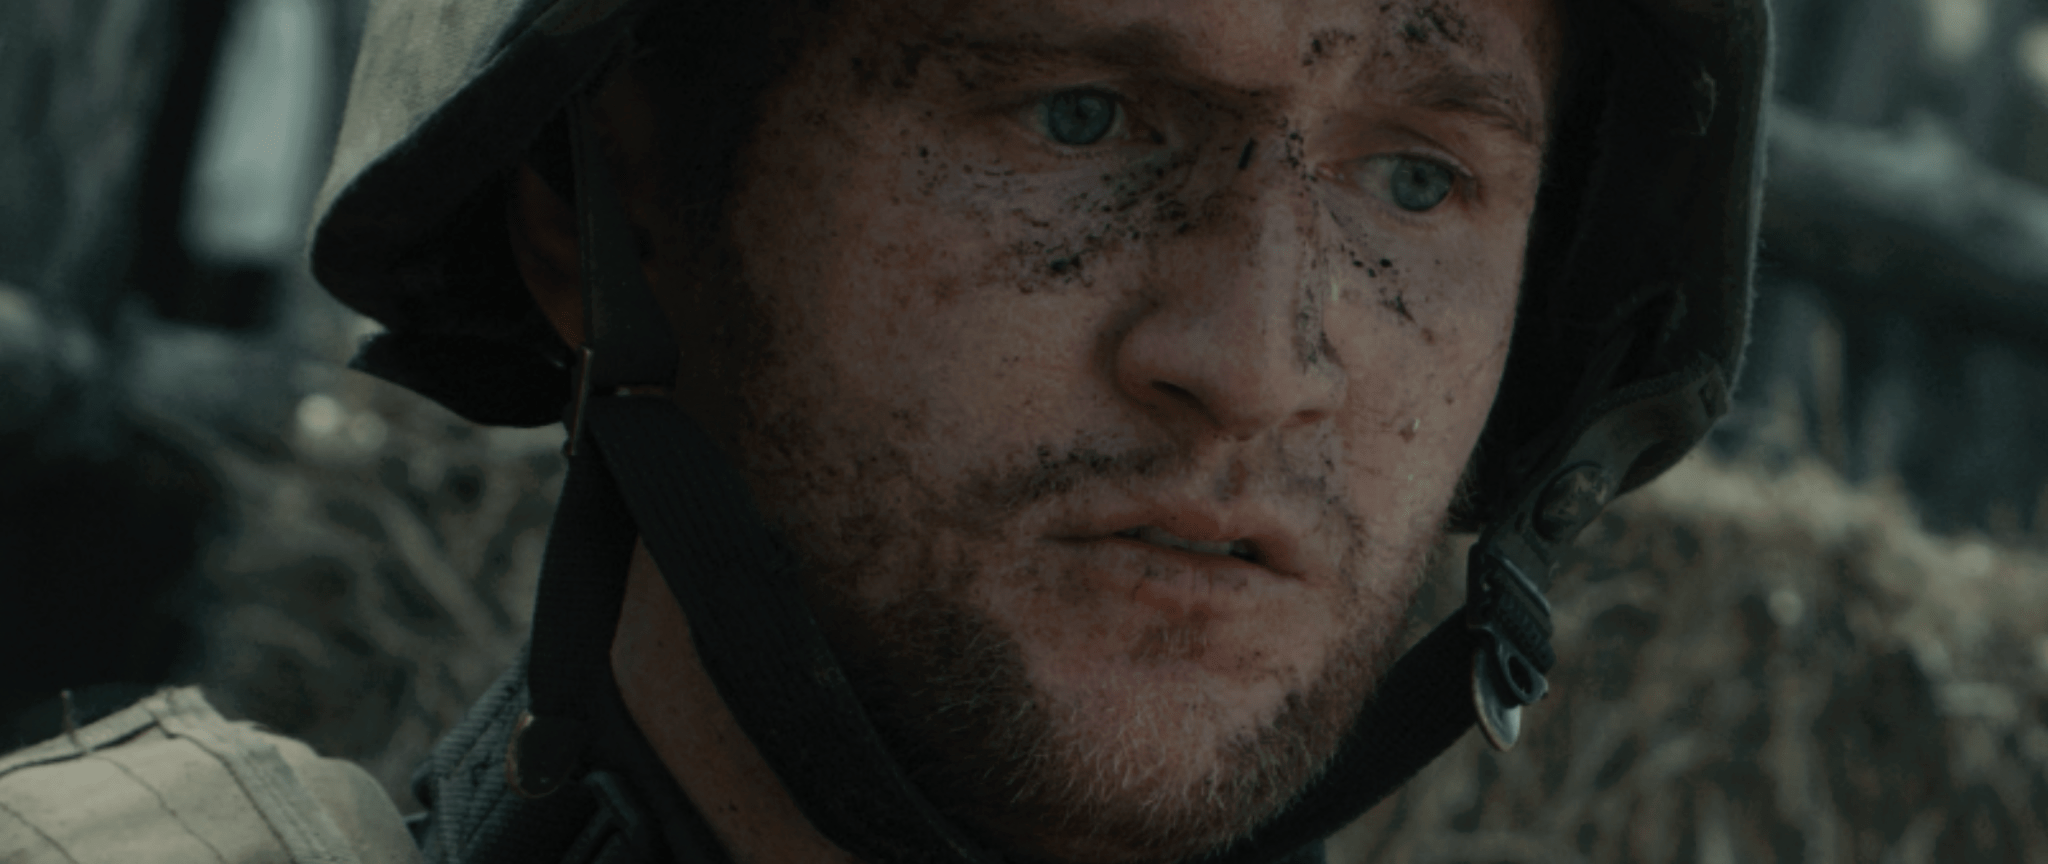 A soldier in a war film